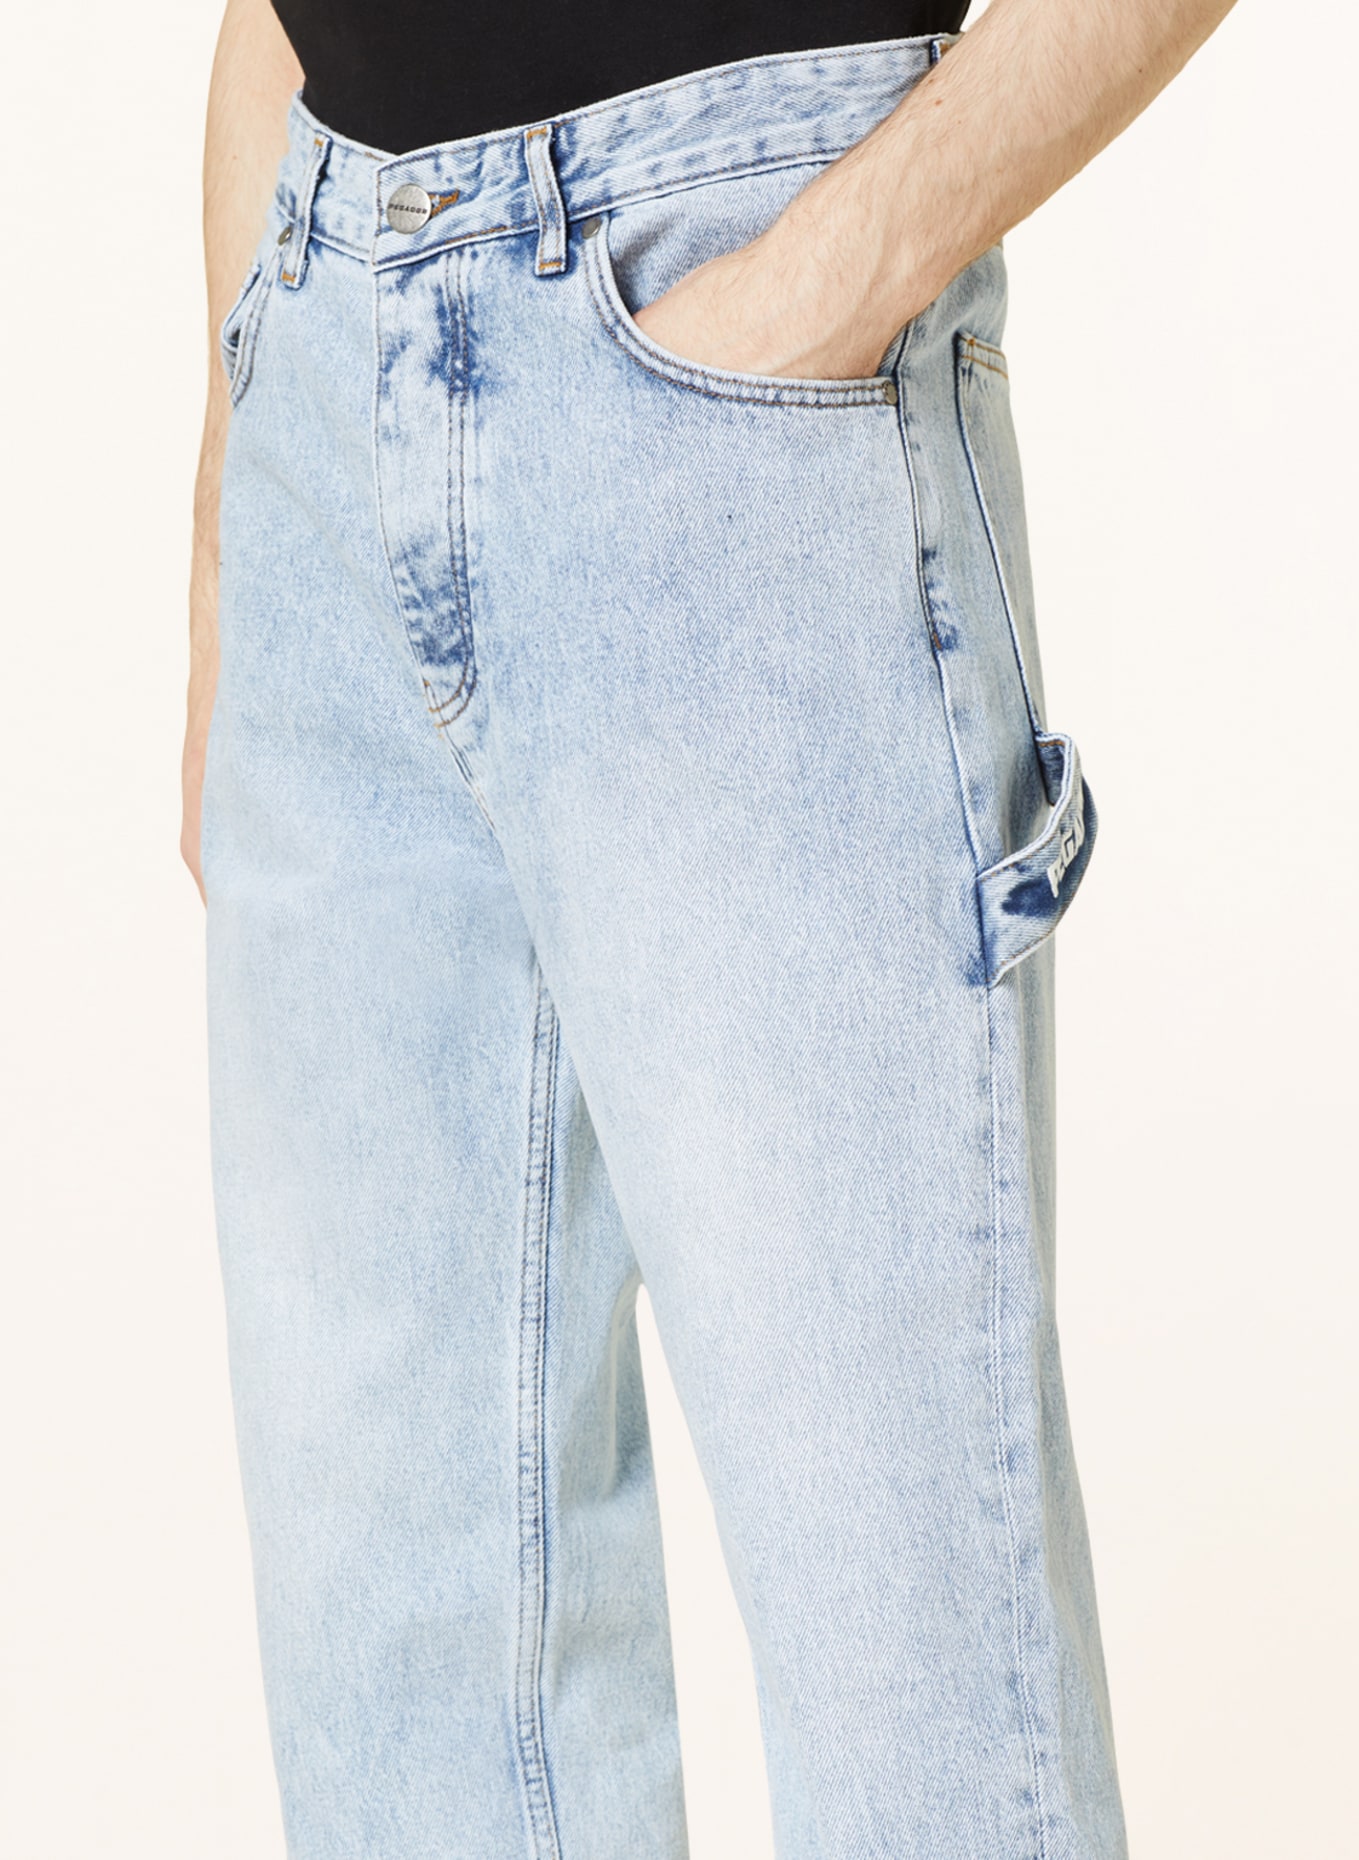 PEGADOR Jeans Slim Fit, Farbe: 076 washed light blue (Bild 5)